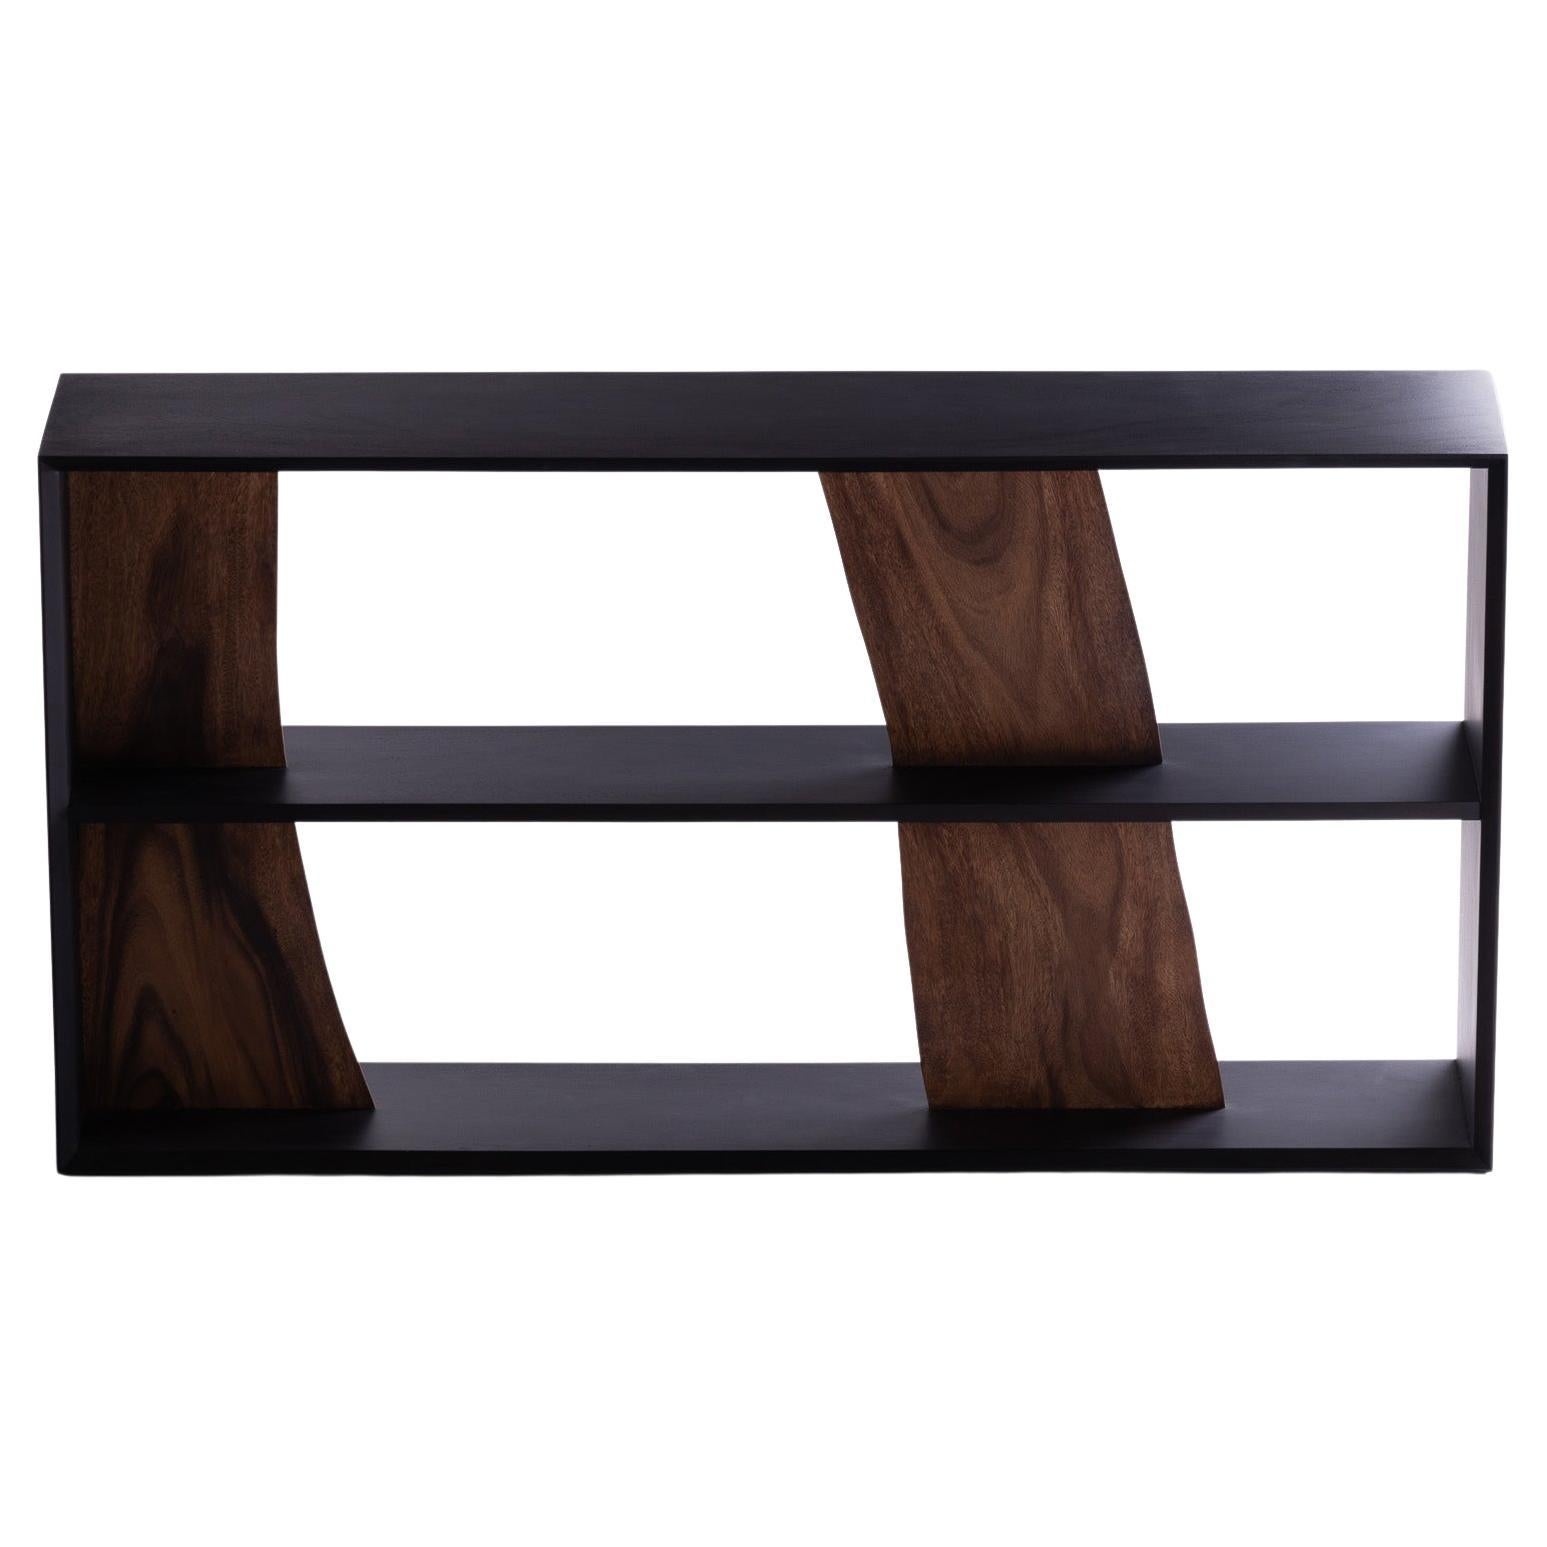 Darakorn Horizontal Shelf, Two Tone Wood (Natural slab + Charcoal Back Body)